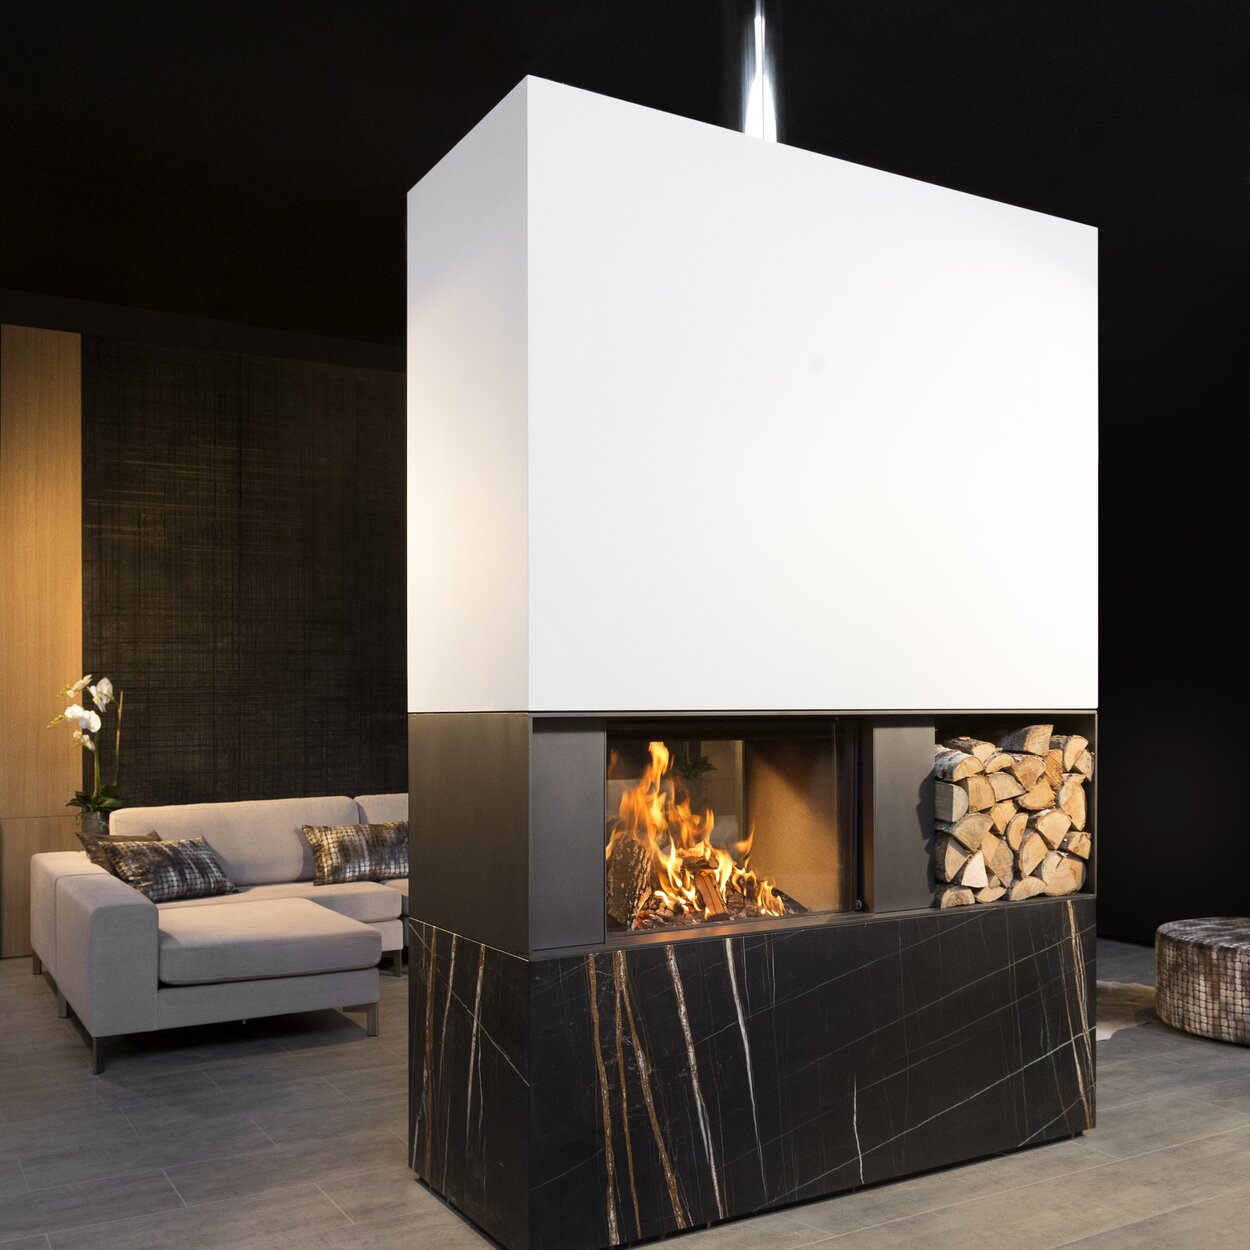 Camino a legna W80/52T di Kalfire come divisorio per ambienti con pratico contenitore di legna integrato in un soggiorno moderno